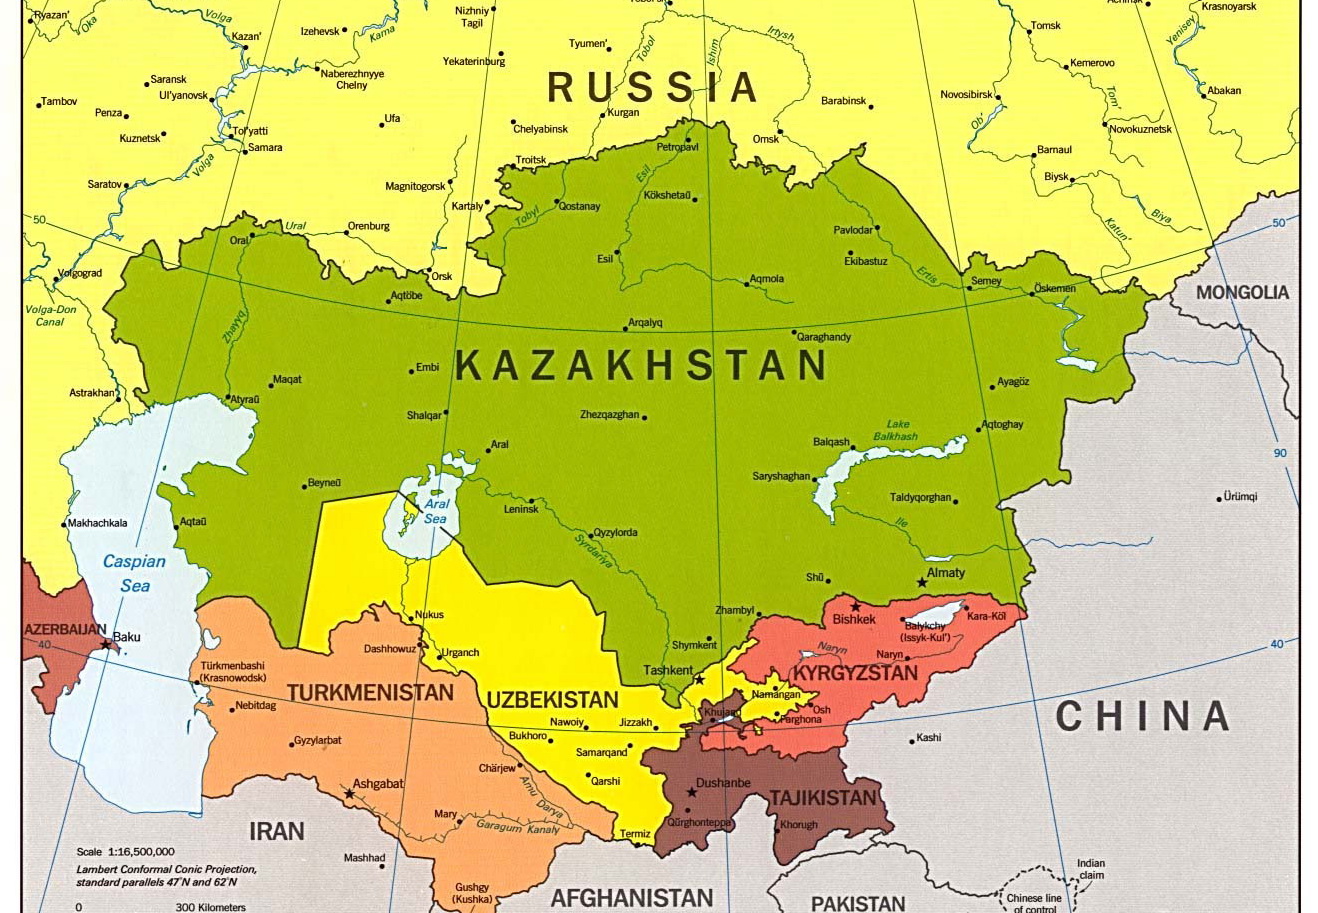 Геополитическая  конкуренция США и РФ увеличивают интерес Вашингтона  к региону Центральной Азии  - Казахстанский эксперт